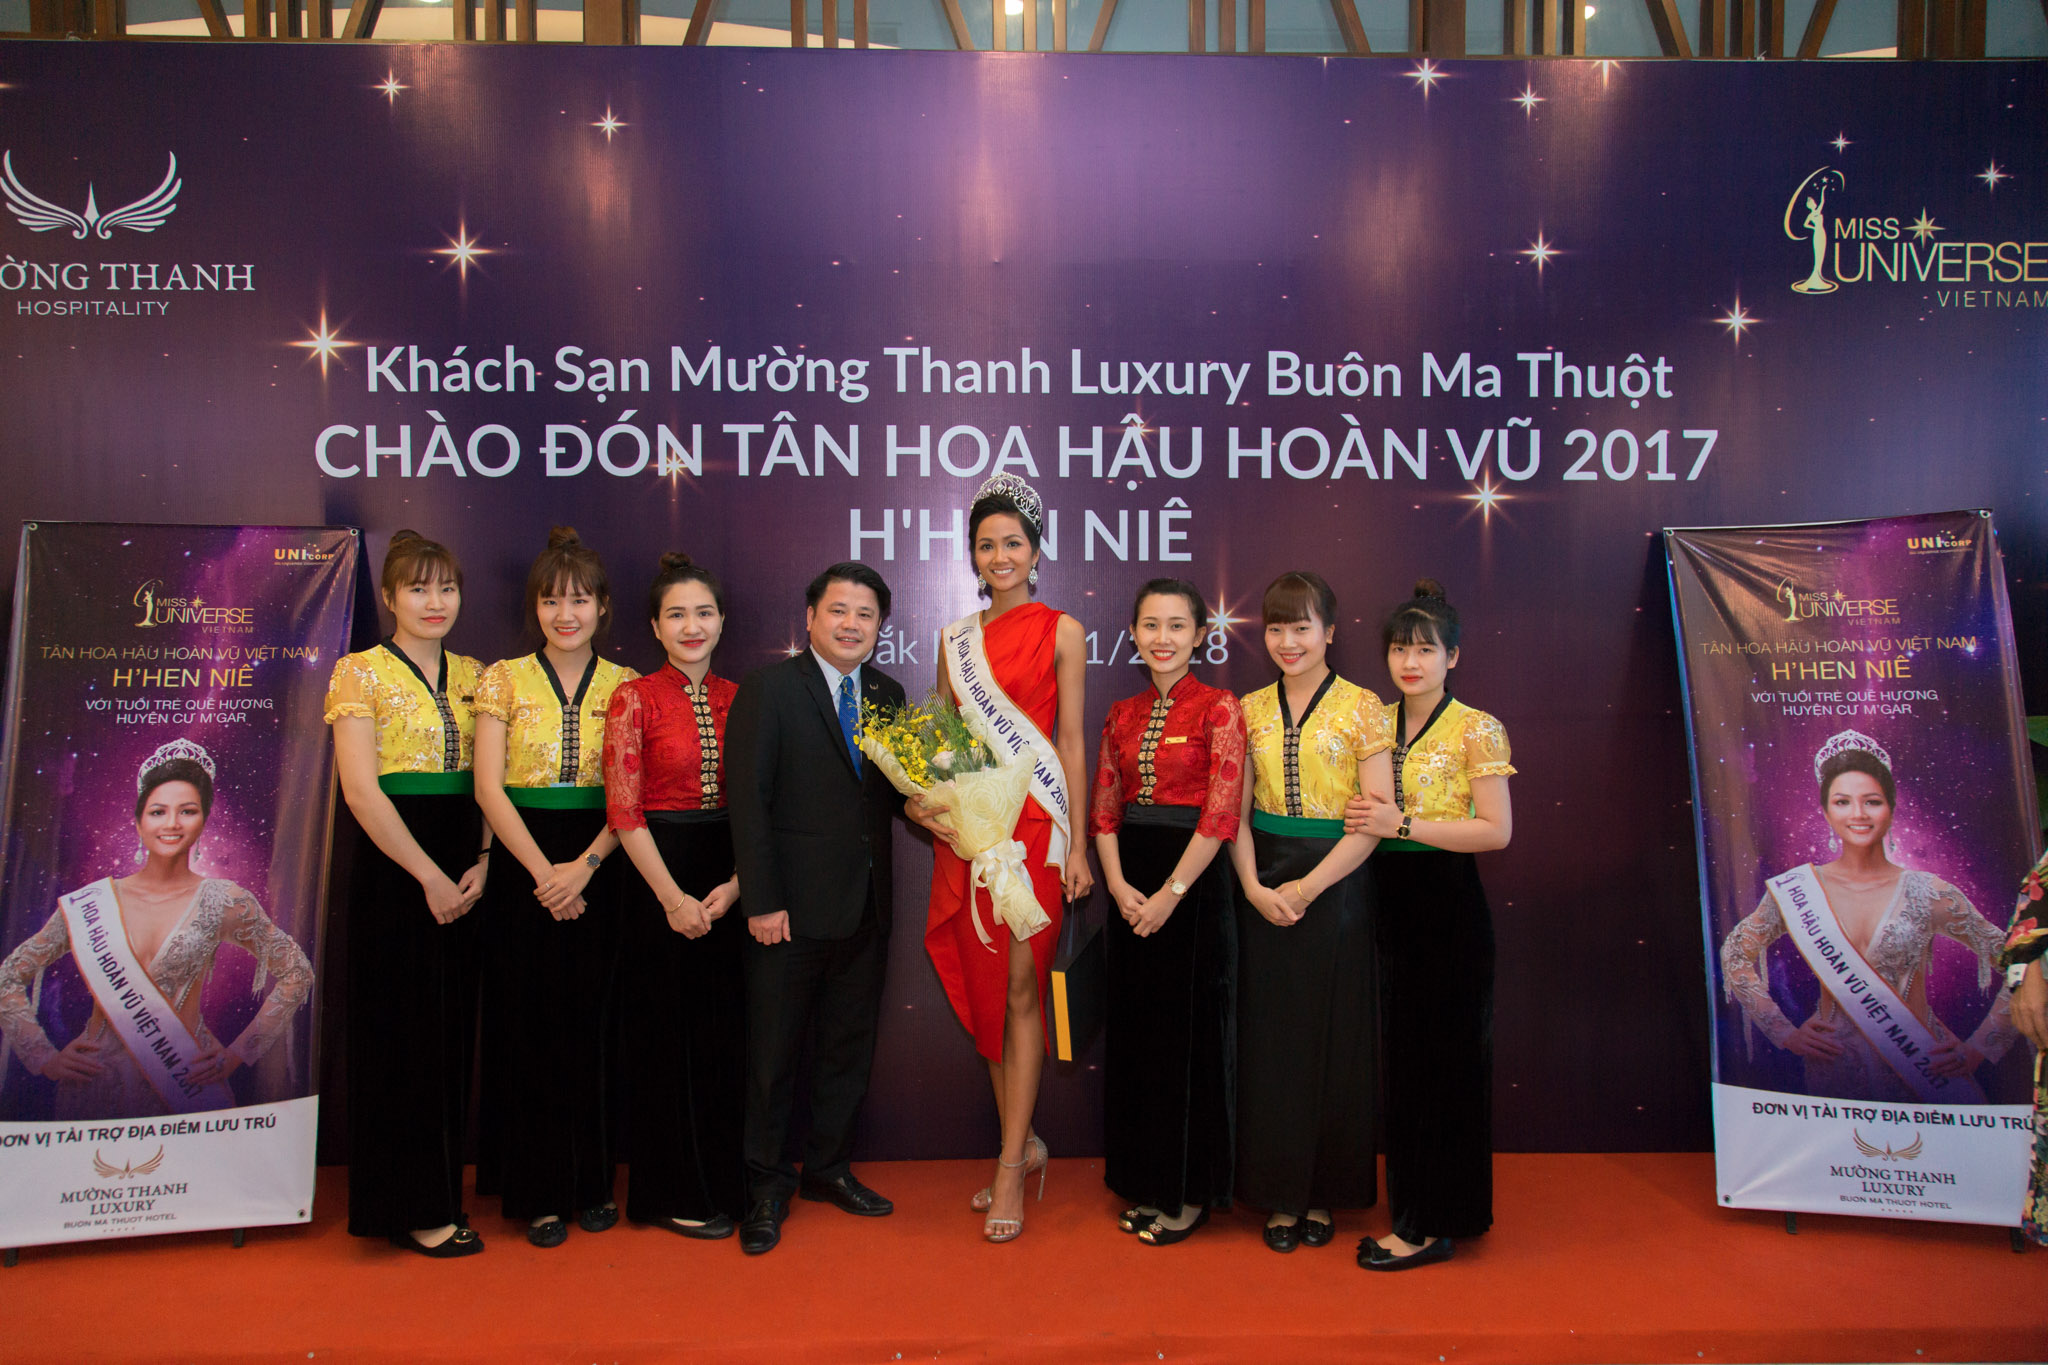 Hoa hậu H'hen Niê đến khách sạn Mường Thanh Luxury Buôn Mê Thuột